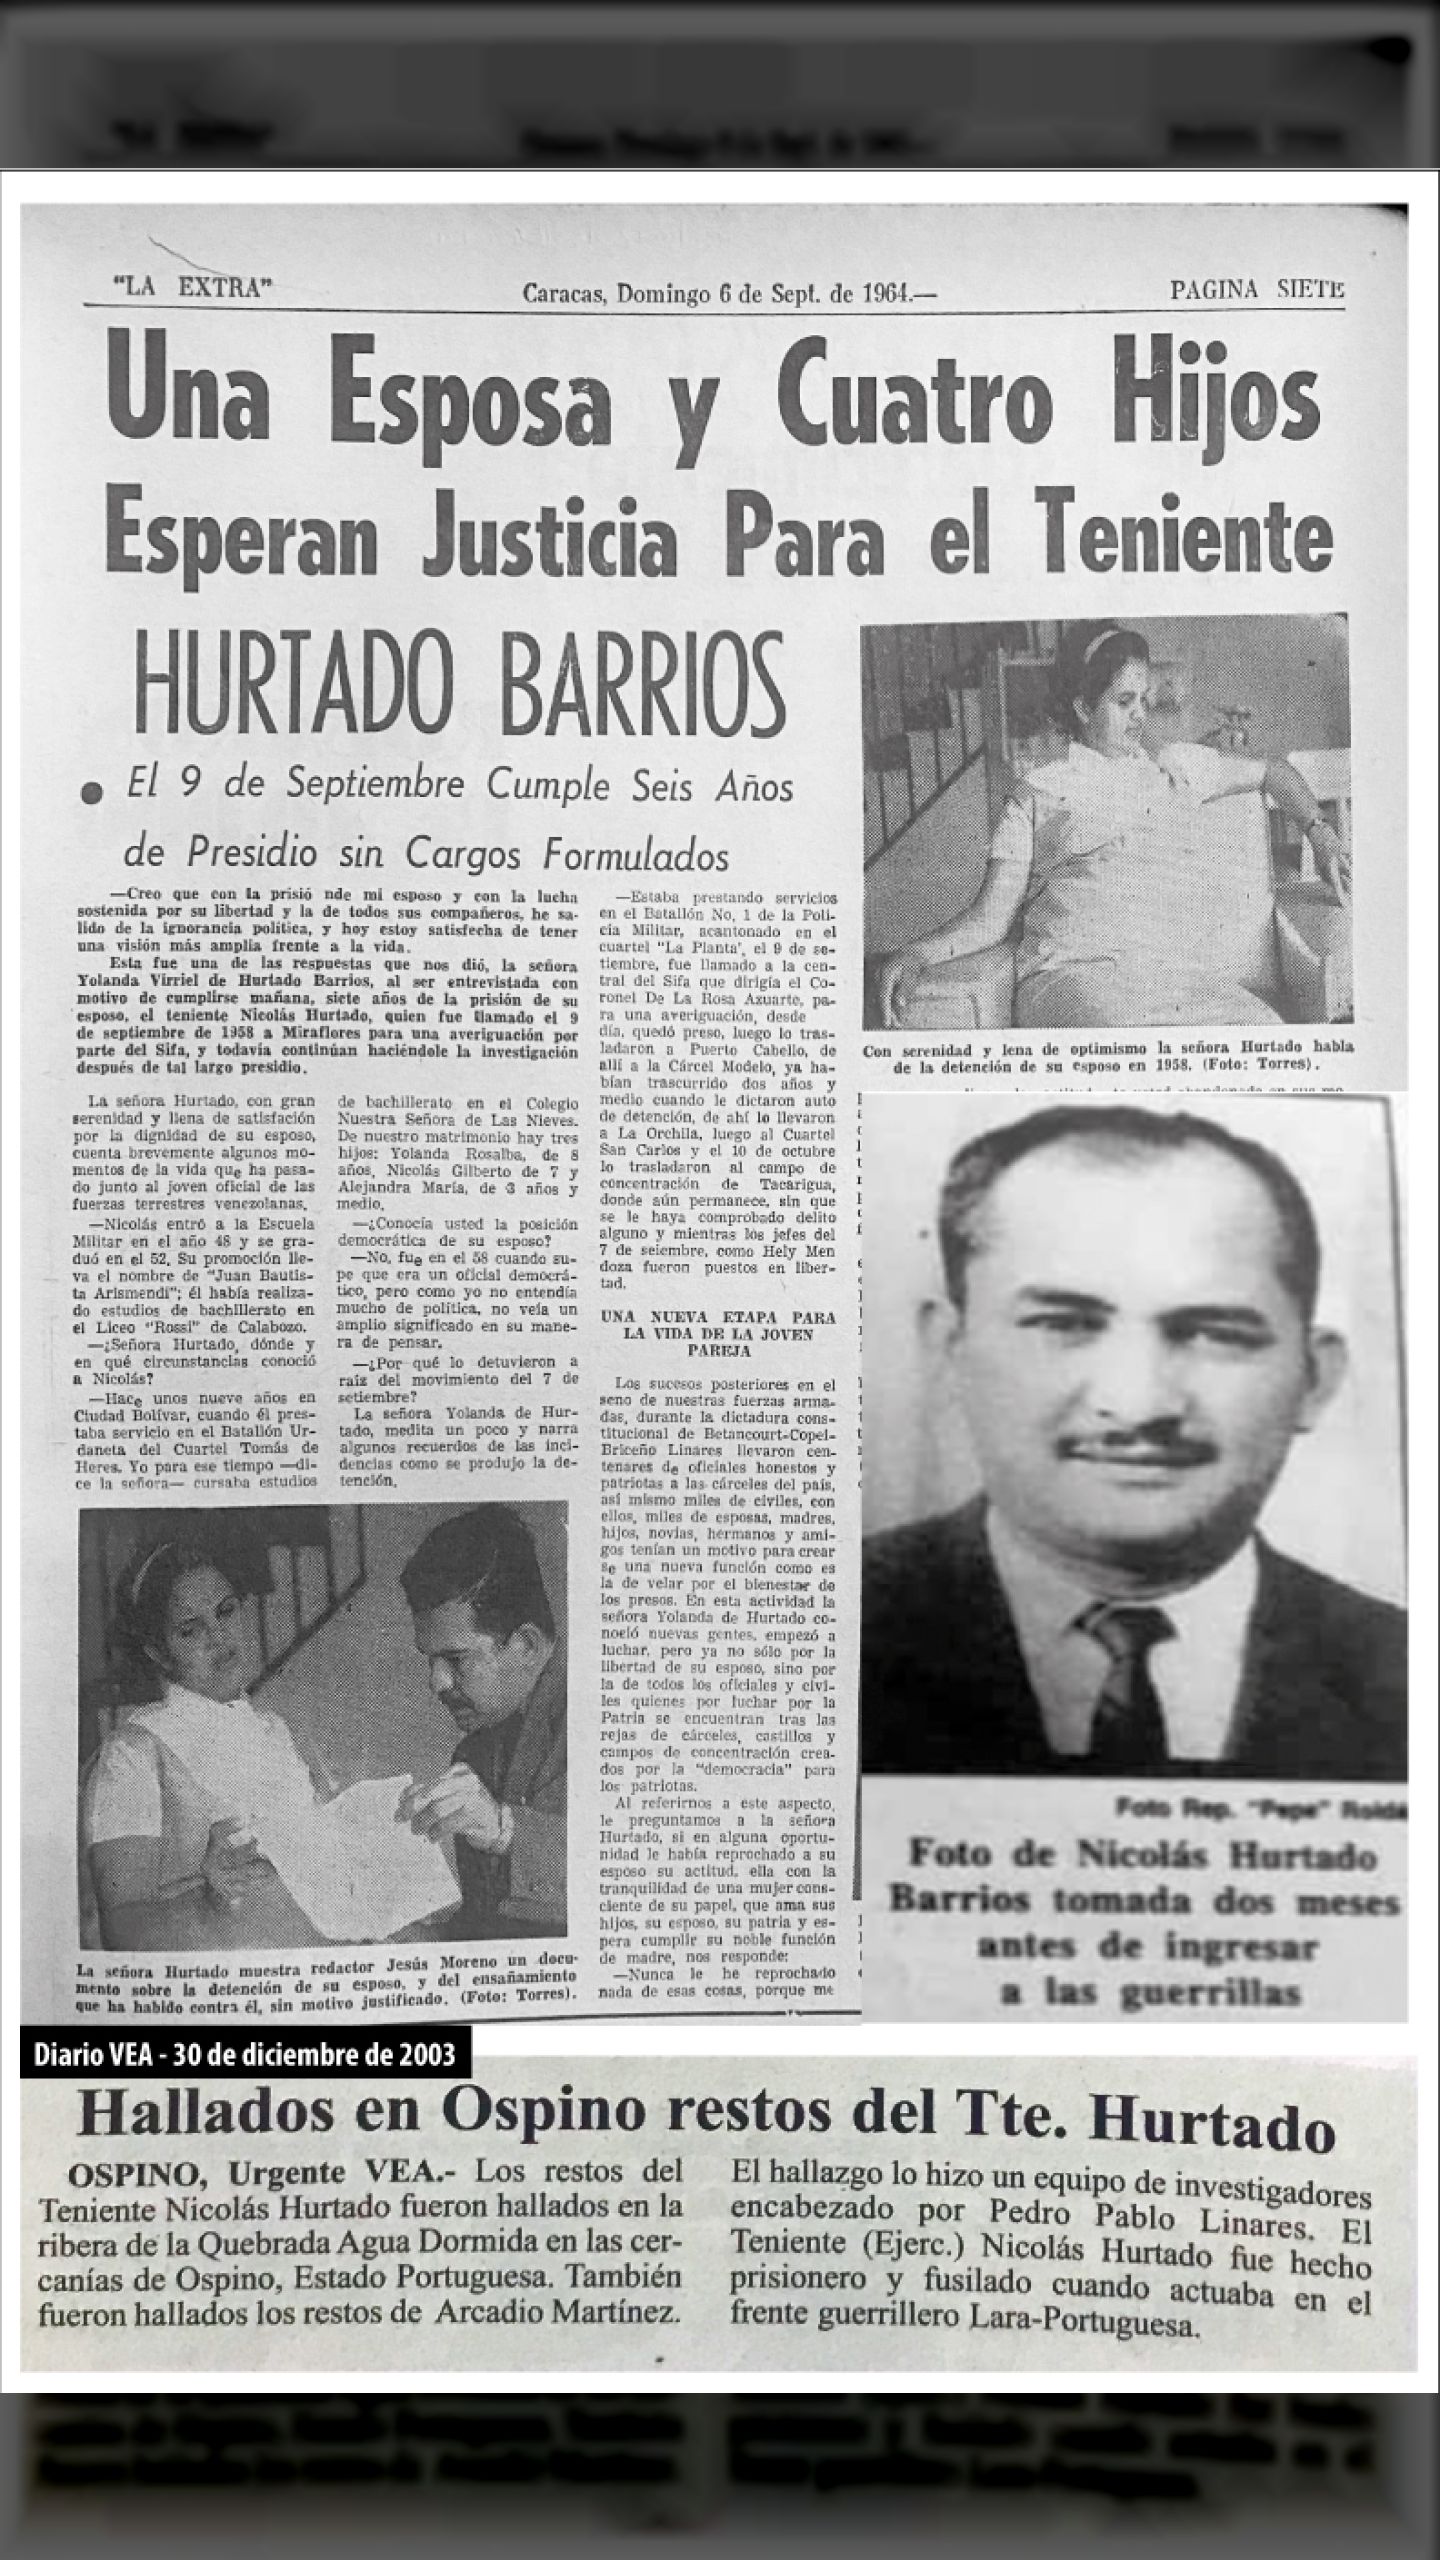 Una Esposa y Cuatro Hijos Esperan Justicia para el Tte.(ej.) Nicolás Hurtado – Carta a sus hijos (La Extra, 6 de septiembre de 1964)